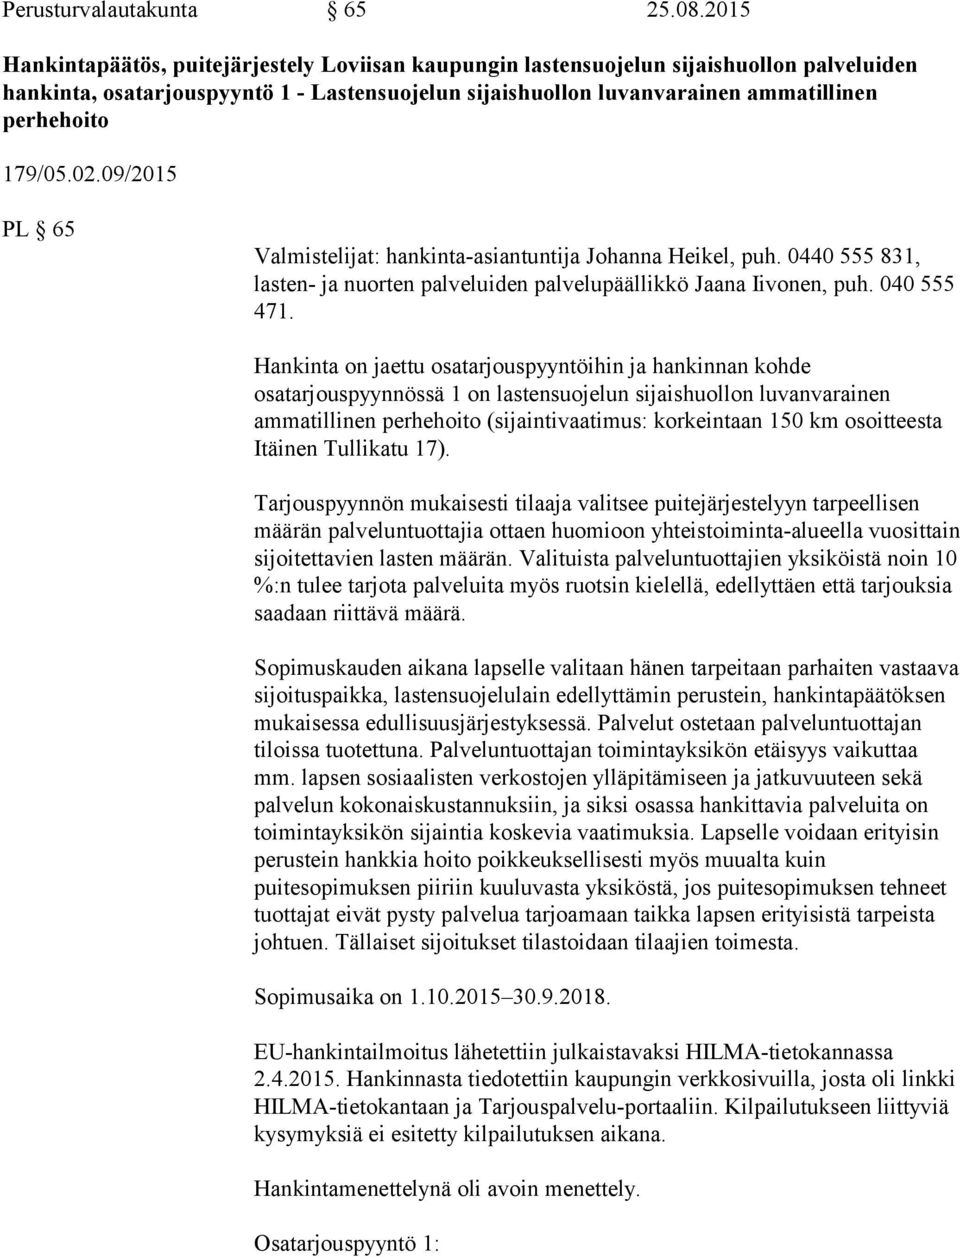 179/05.02.09/2015 PL 65 Valmistelijat: hankinta-asiantuntija Johanna Heikel, puh. 0440 555 831, lasten- ja nuorten palveluiden palvelupäällikkö Jaana Iivonen, puh. 040 555 471.